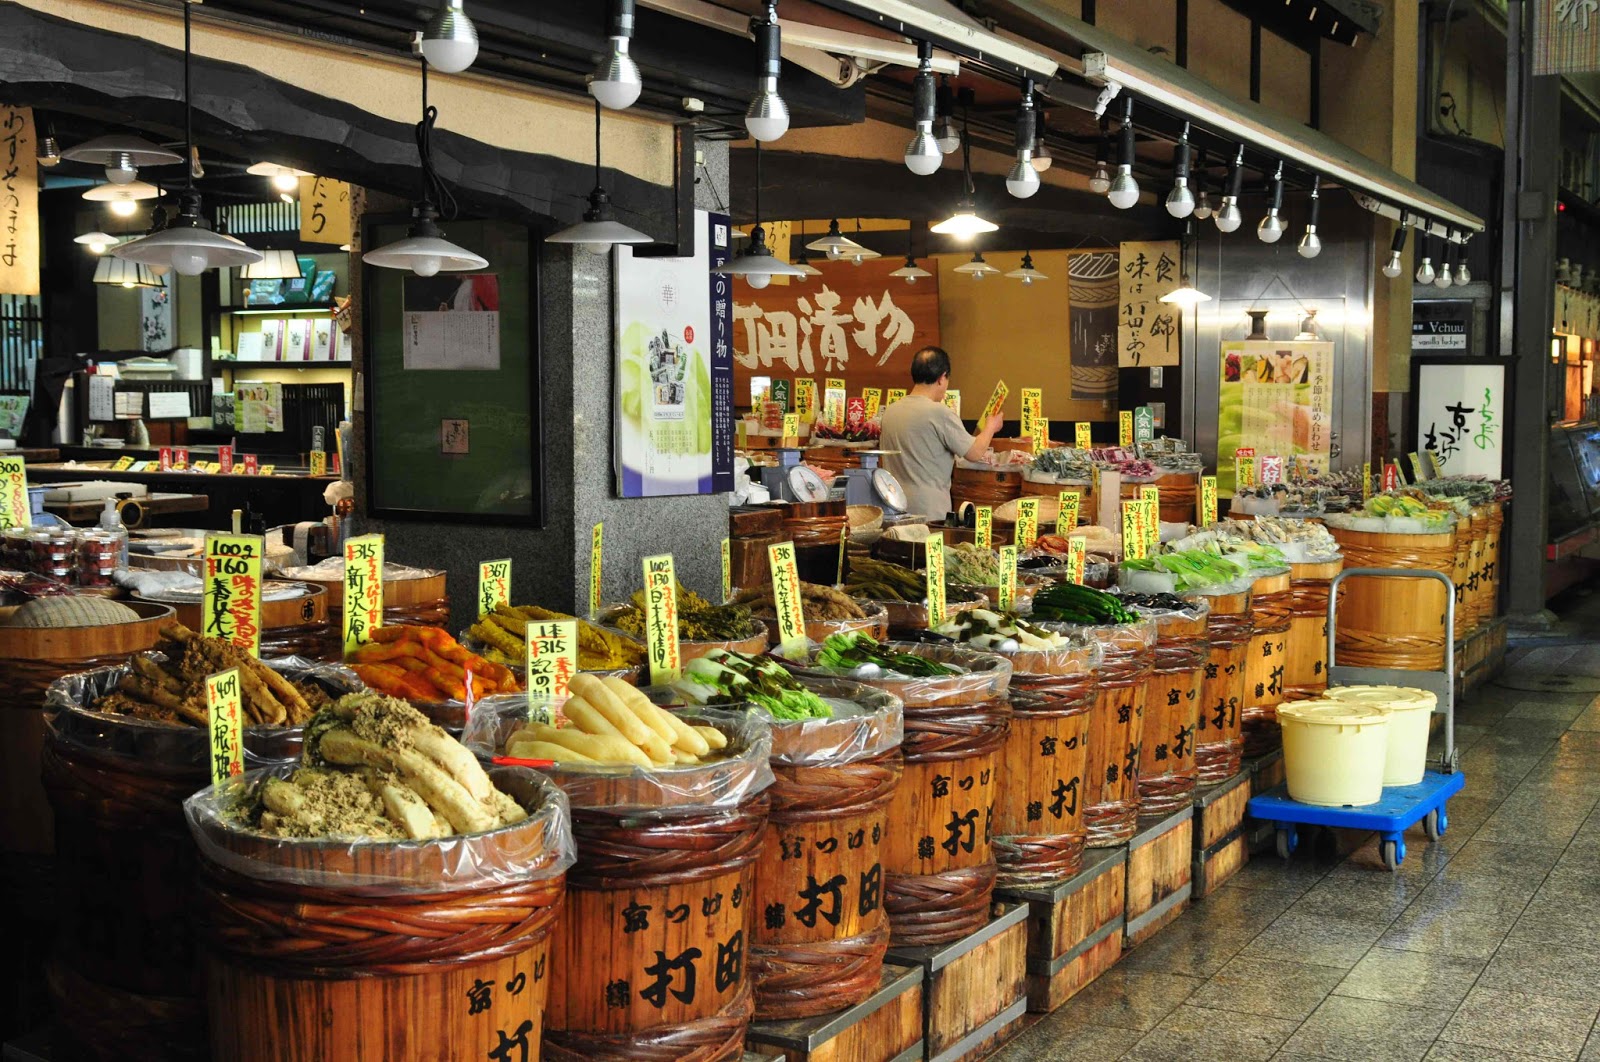 Japan 2012 - Nishiki Market Kyoto